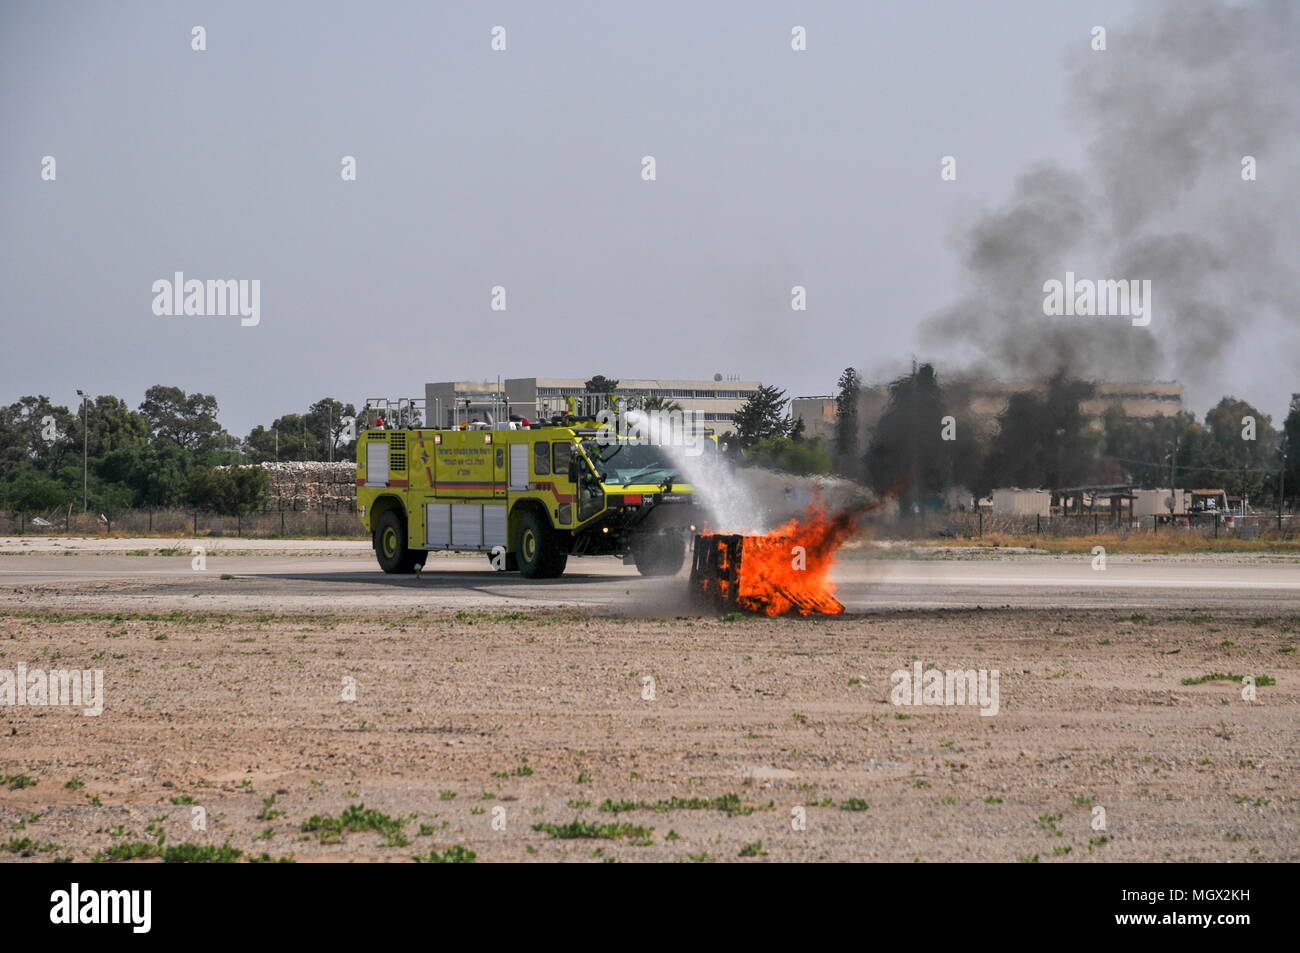 L'administration de l'aéroport d'Israël camion à incendie éteint un incendie lors d'une démonstration. Photographié à l'Aérodrome de Haïfa Banque D'Images